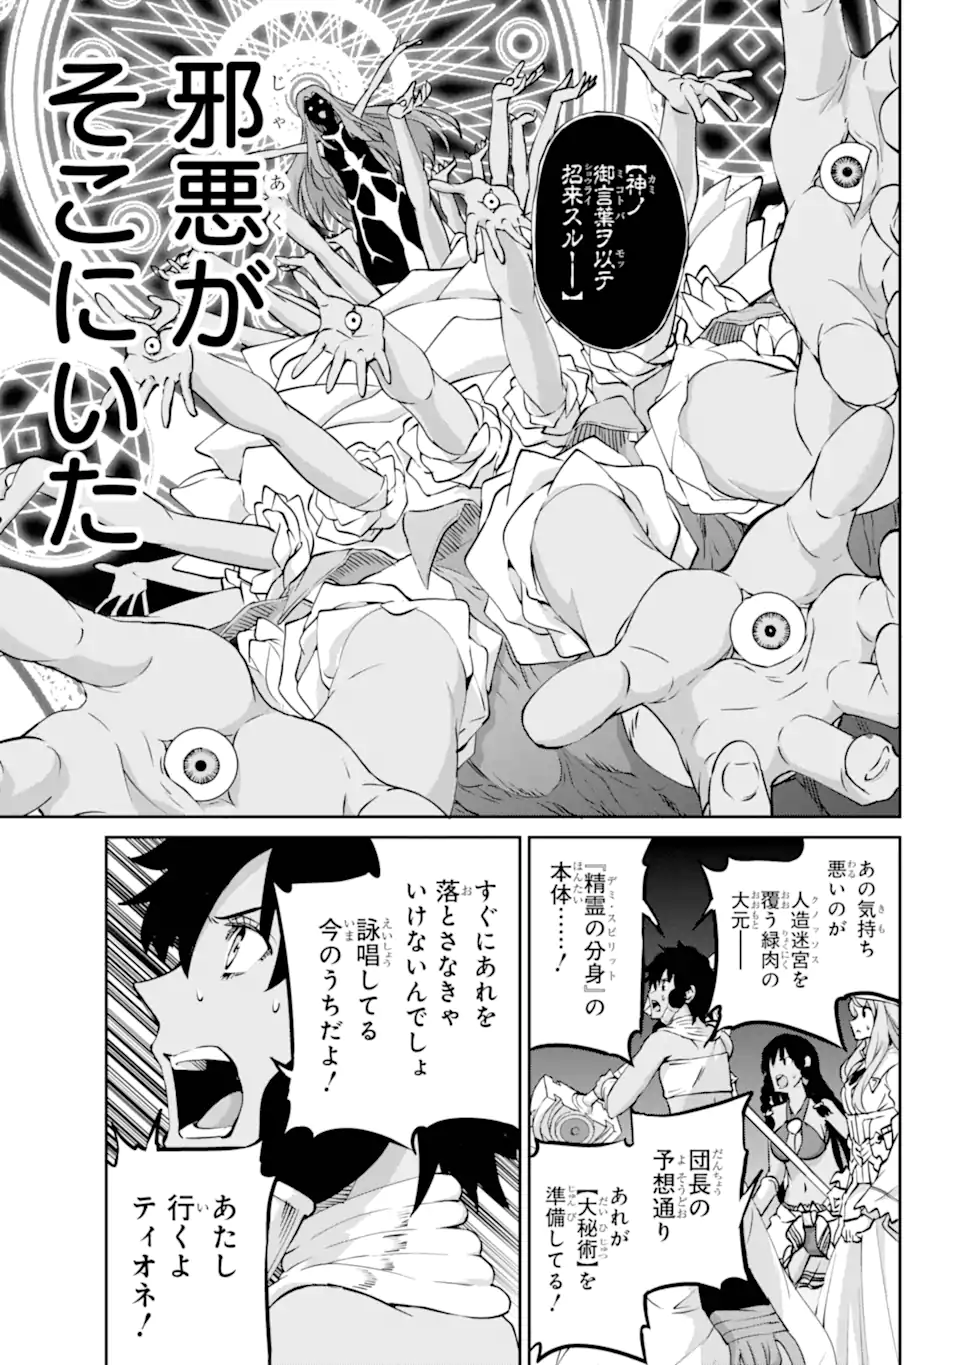 Dungeon ni Deai wo Motomeru no wa Machigatte Iru Darou ka Gaiden - Sword Oratoria - Chapter 118.1 - Page 14